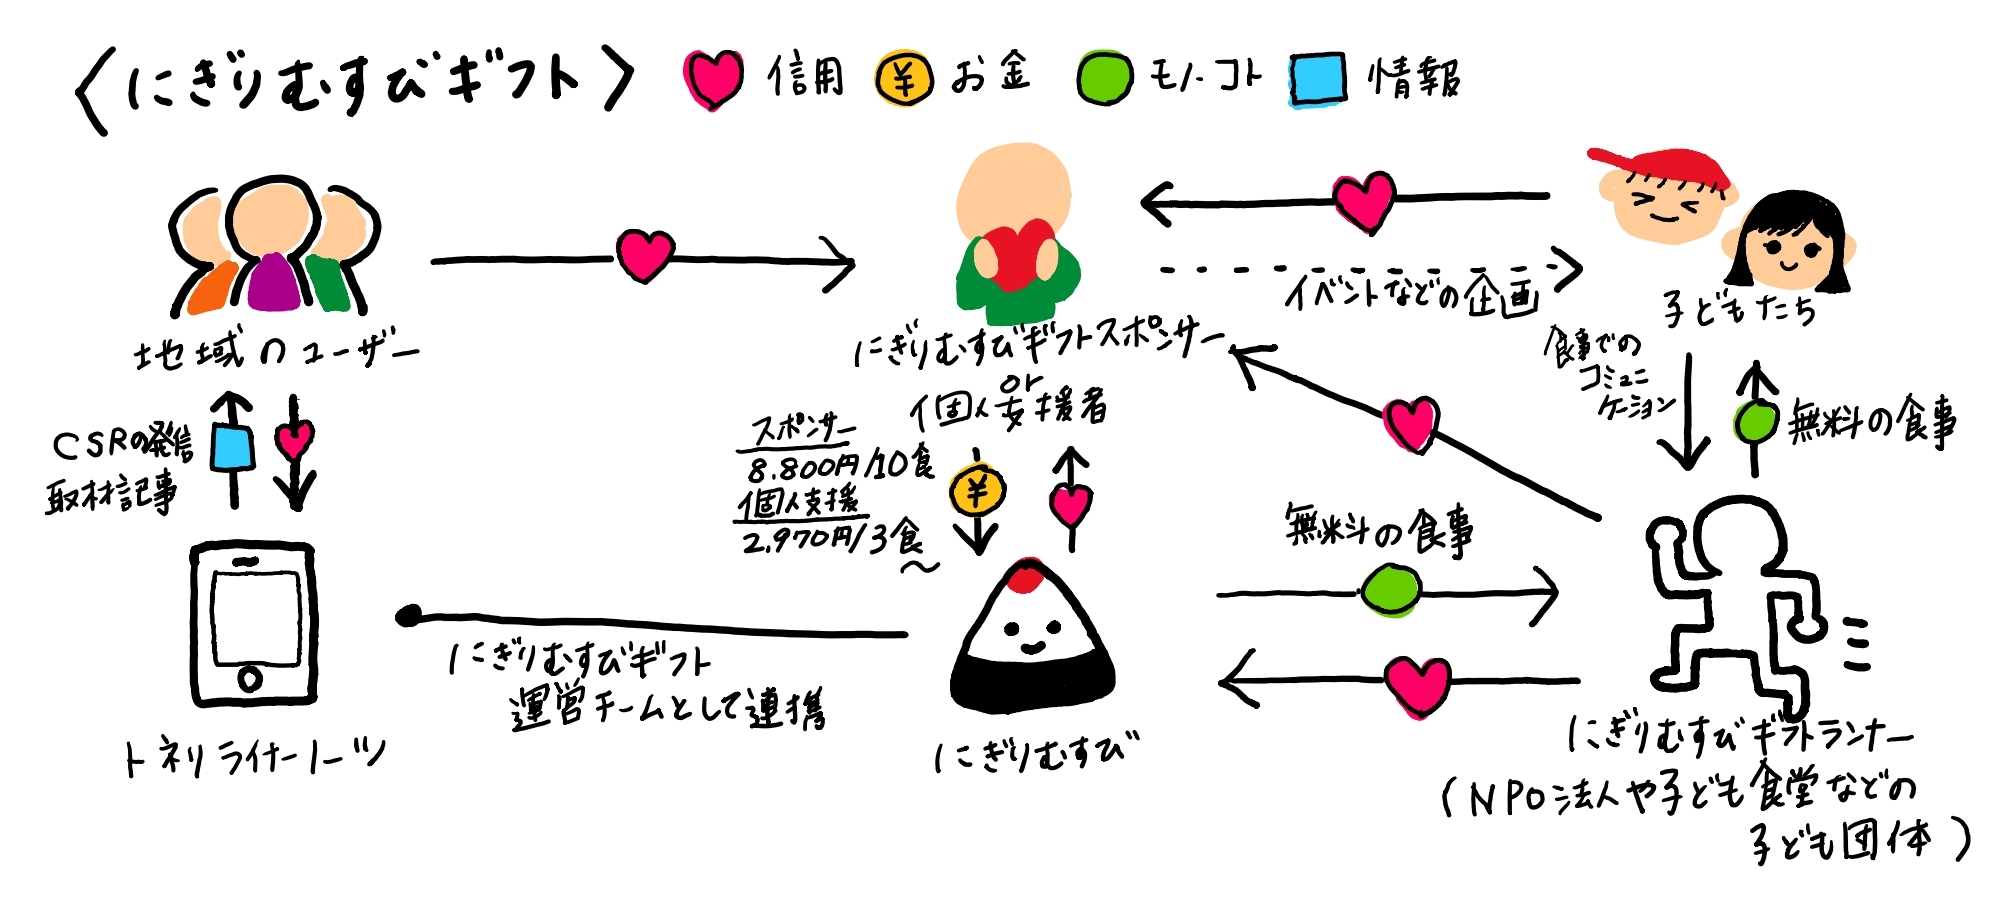 にぎりむすびギフトのビジネスモデル図_page-0001 (1).jpg